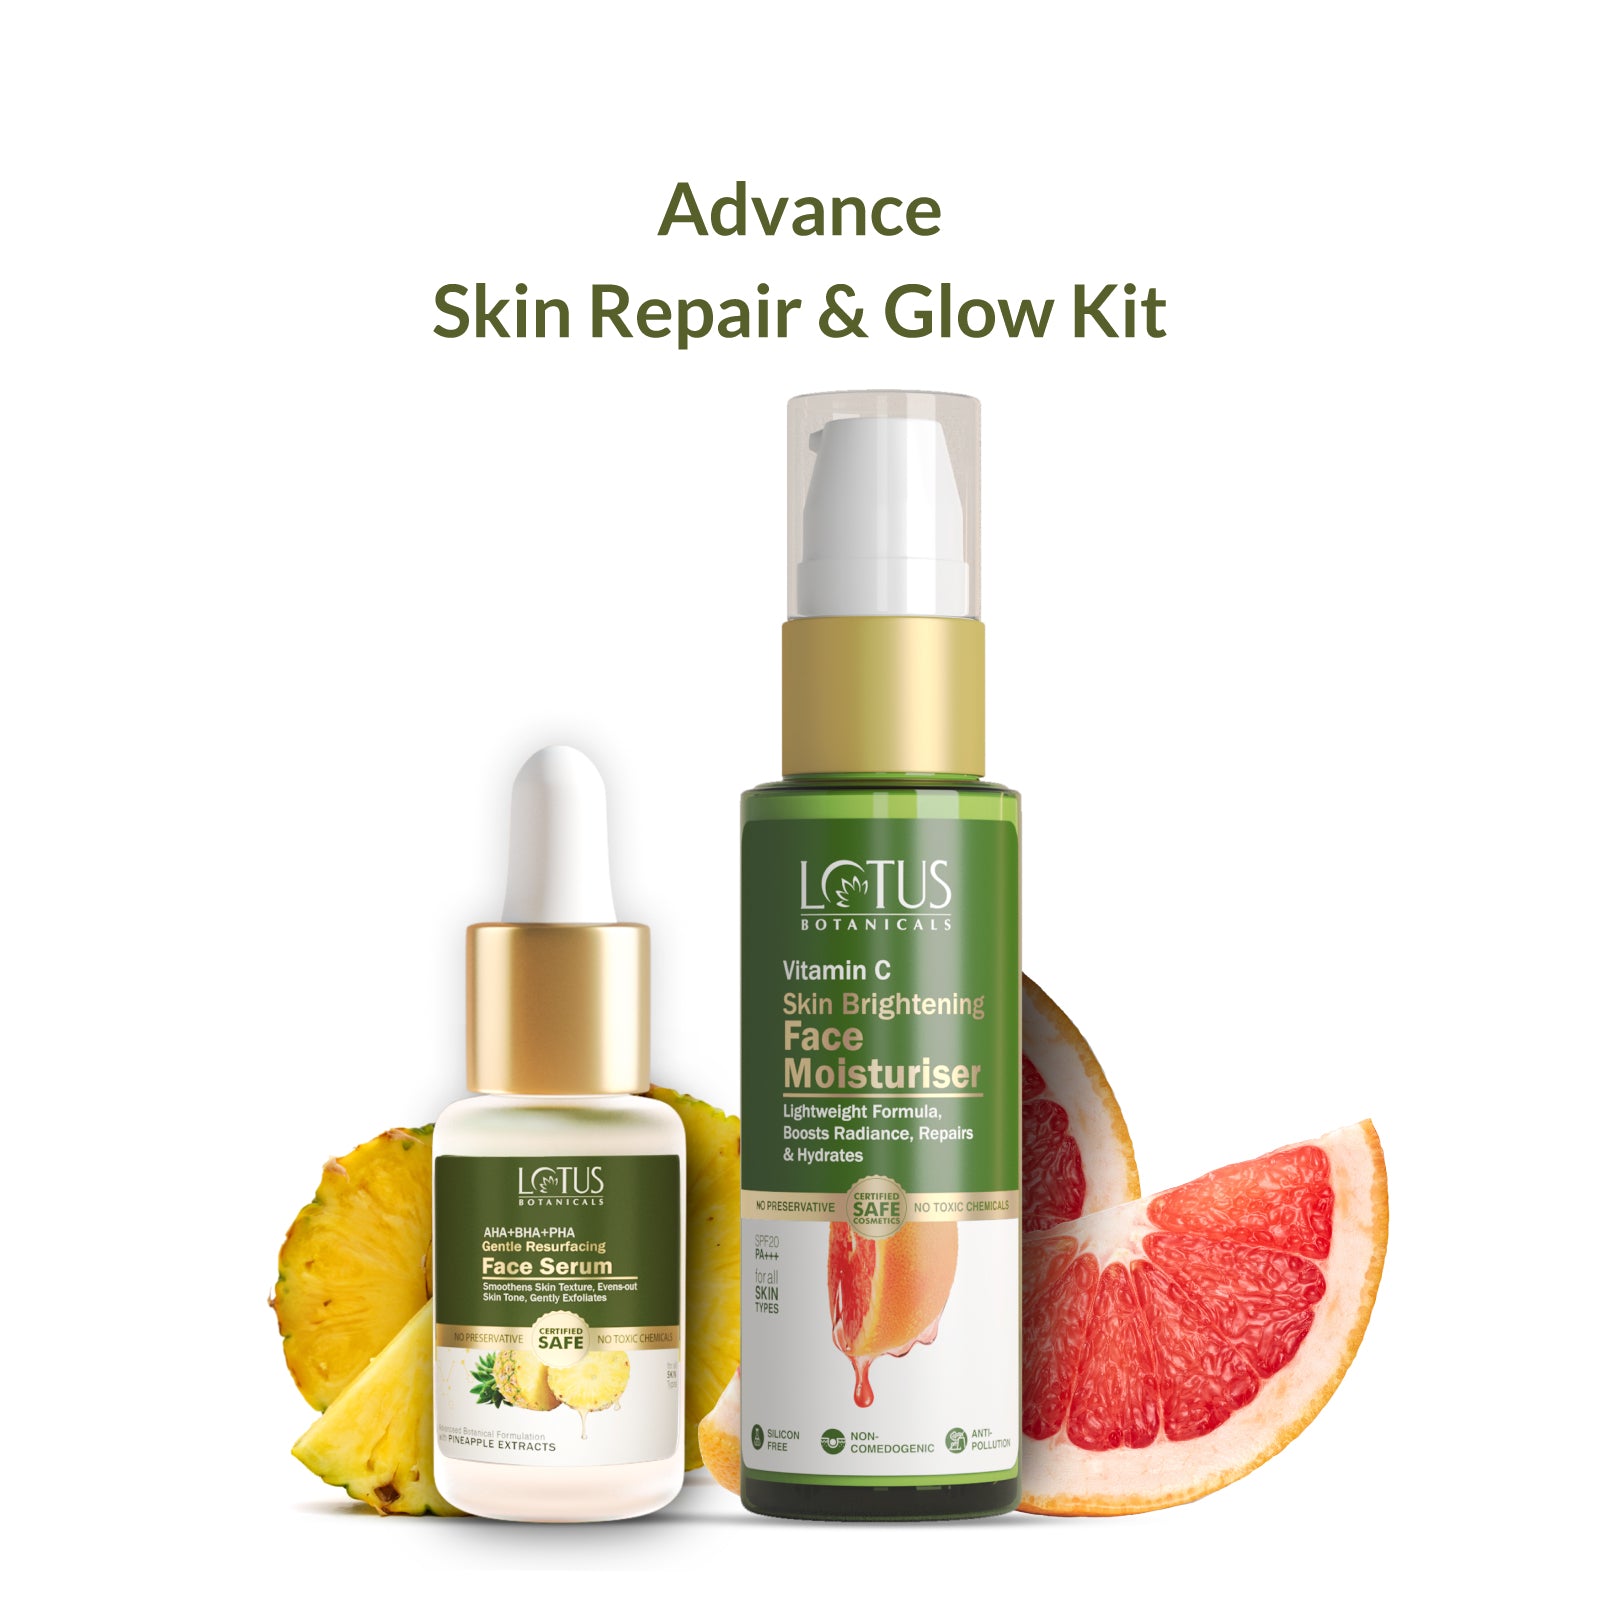 Revitalizing skincare kit for repairing and enhancing skin's natural glow